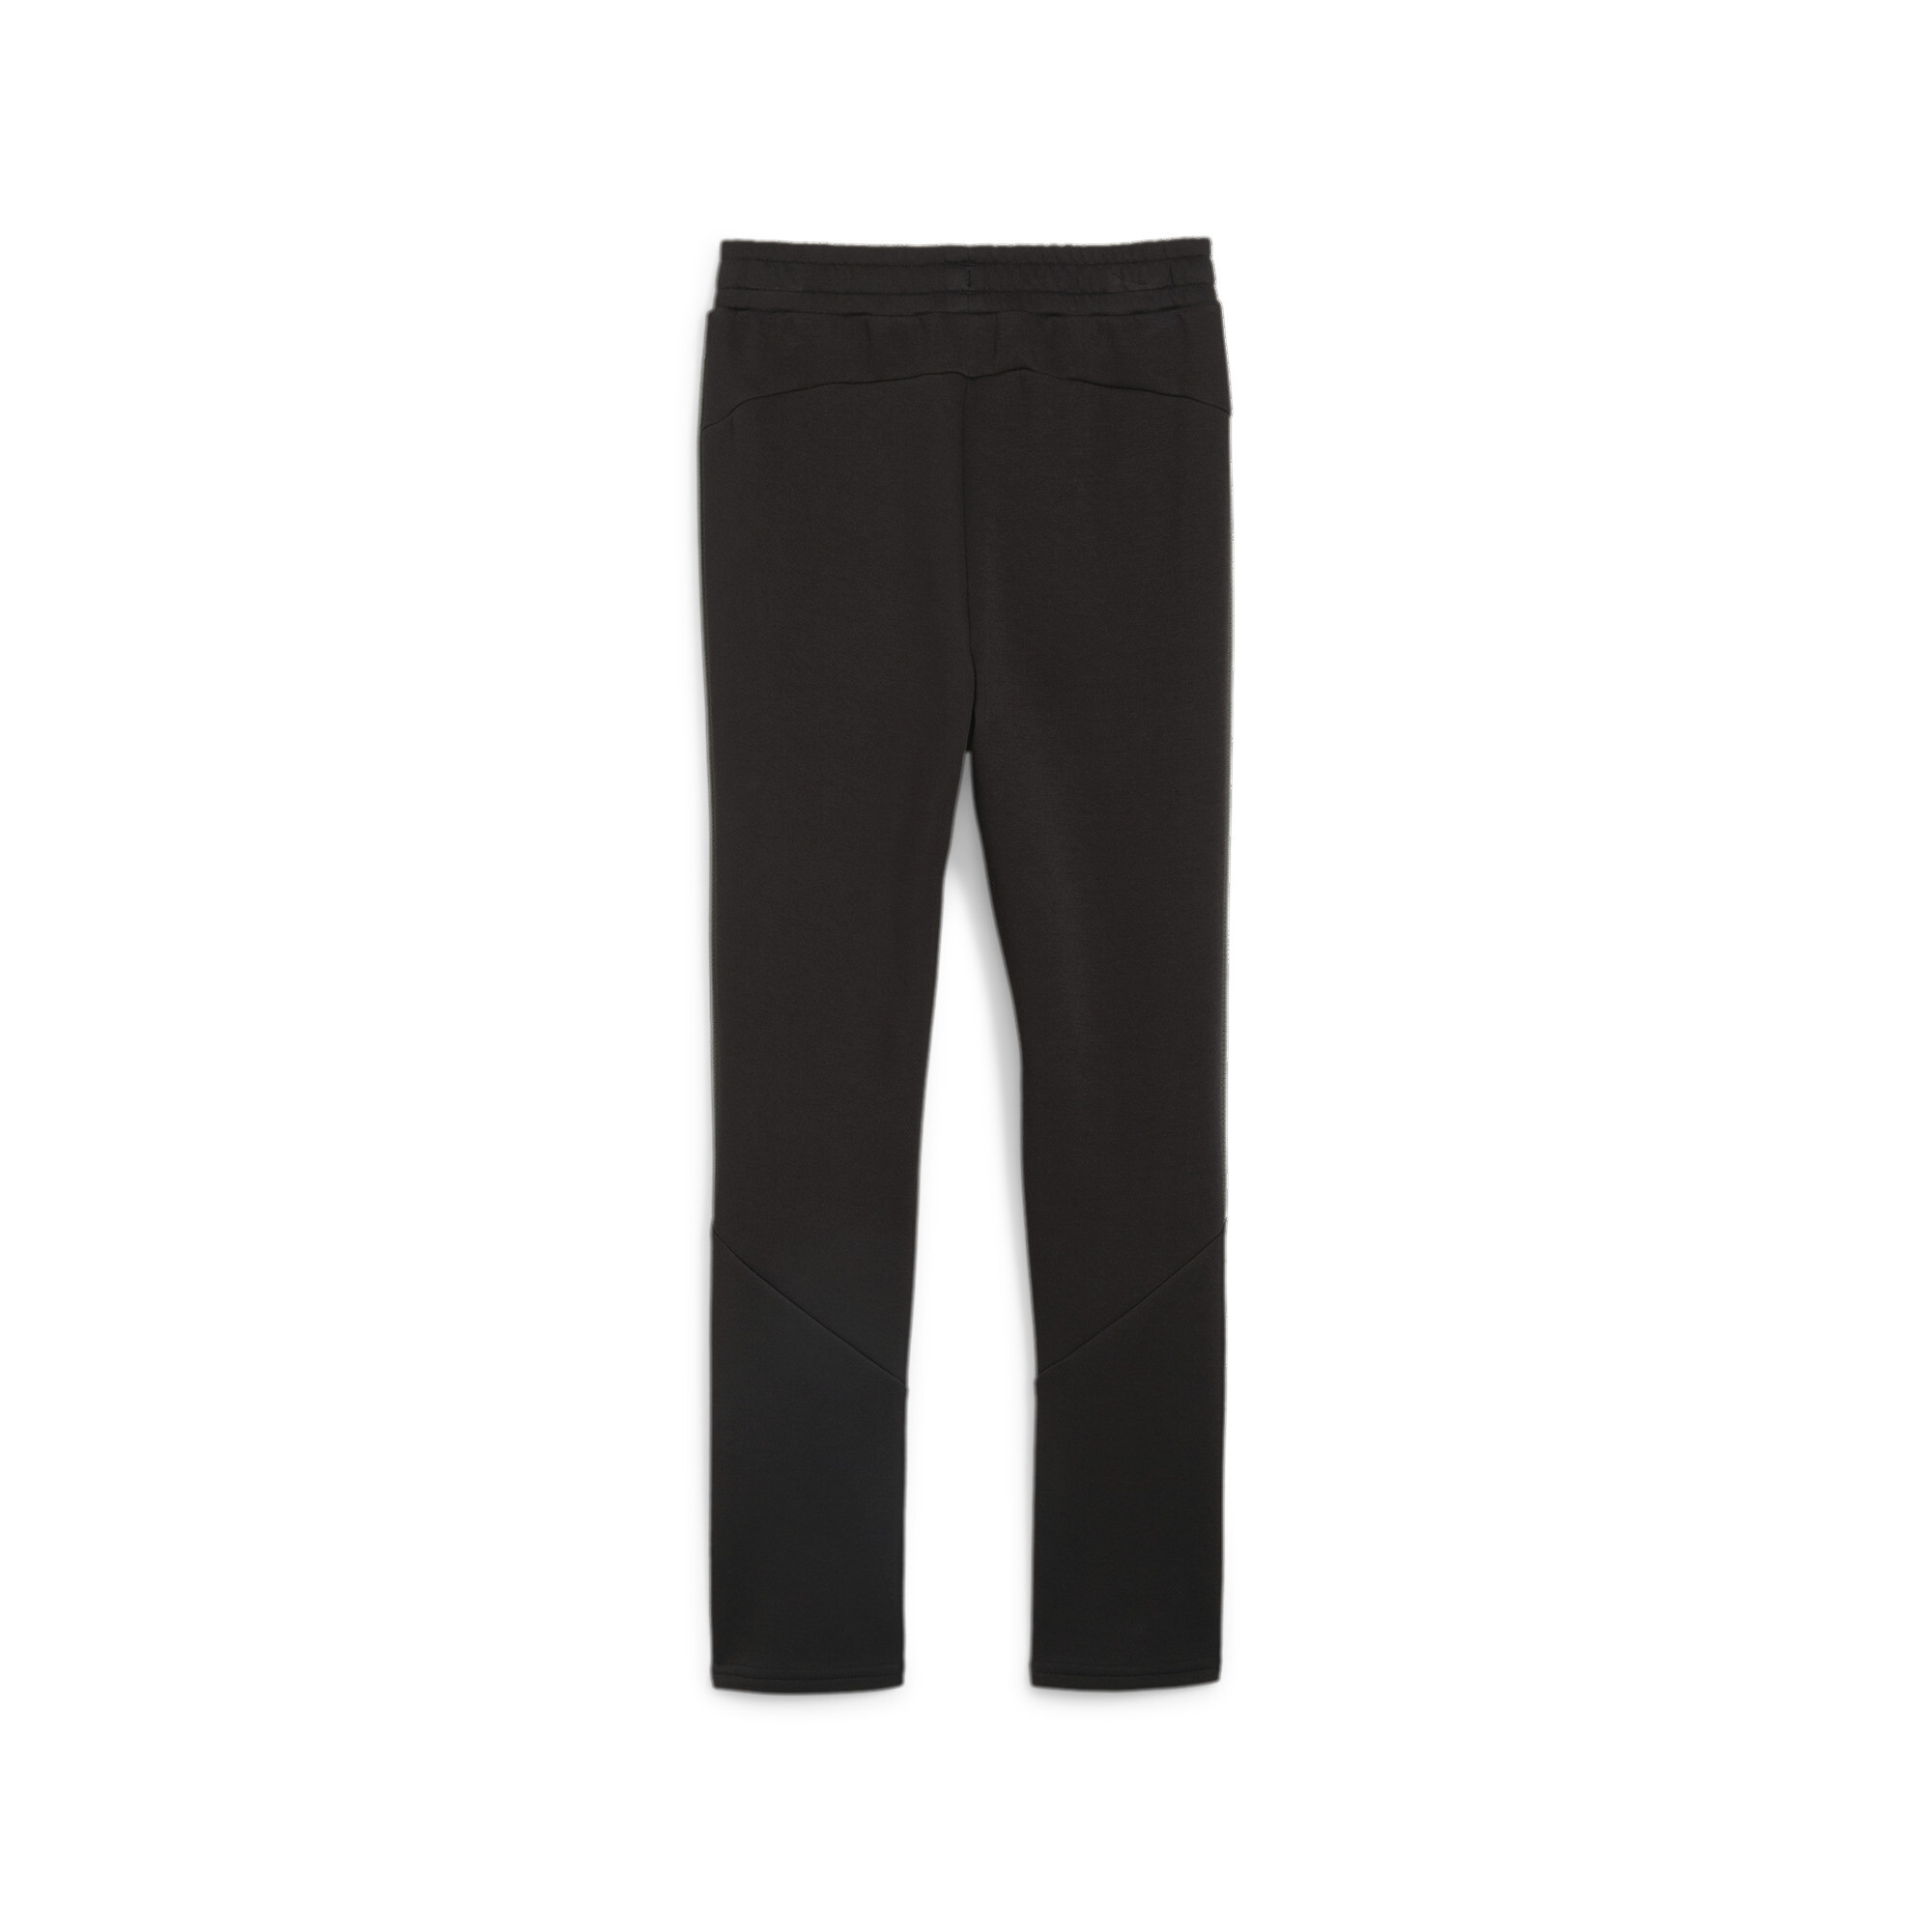 PUMA EVOSTRIPE Sweatpants In Black, Size 9-10 Youth